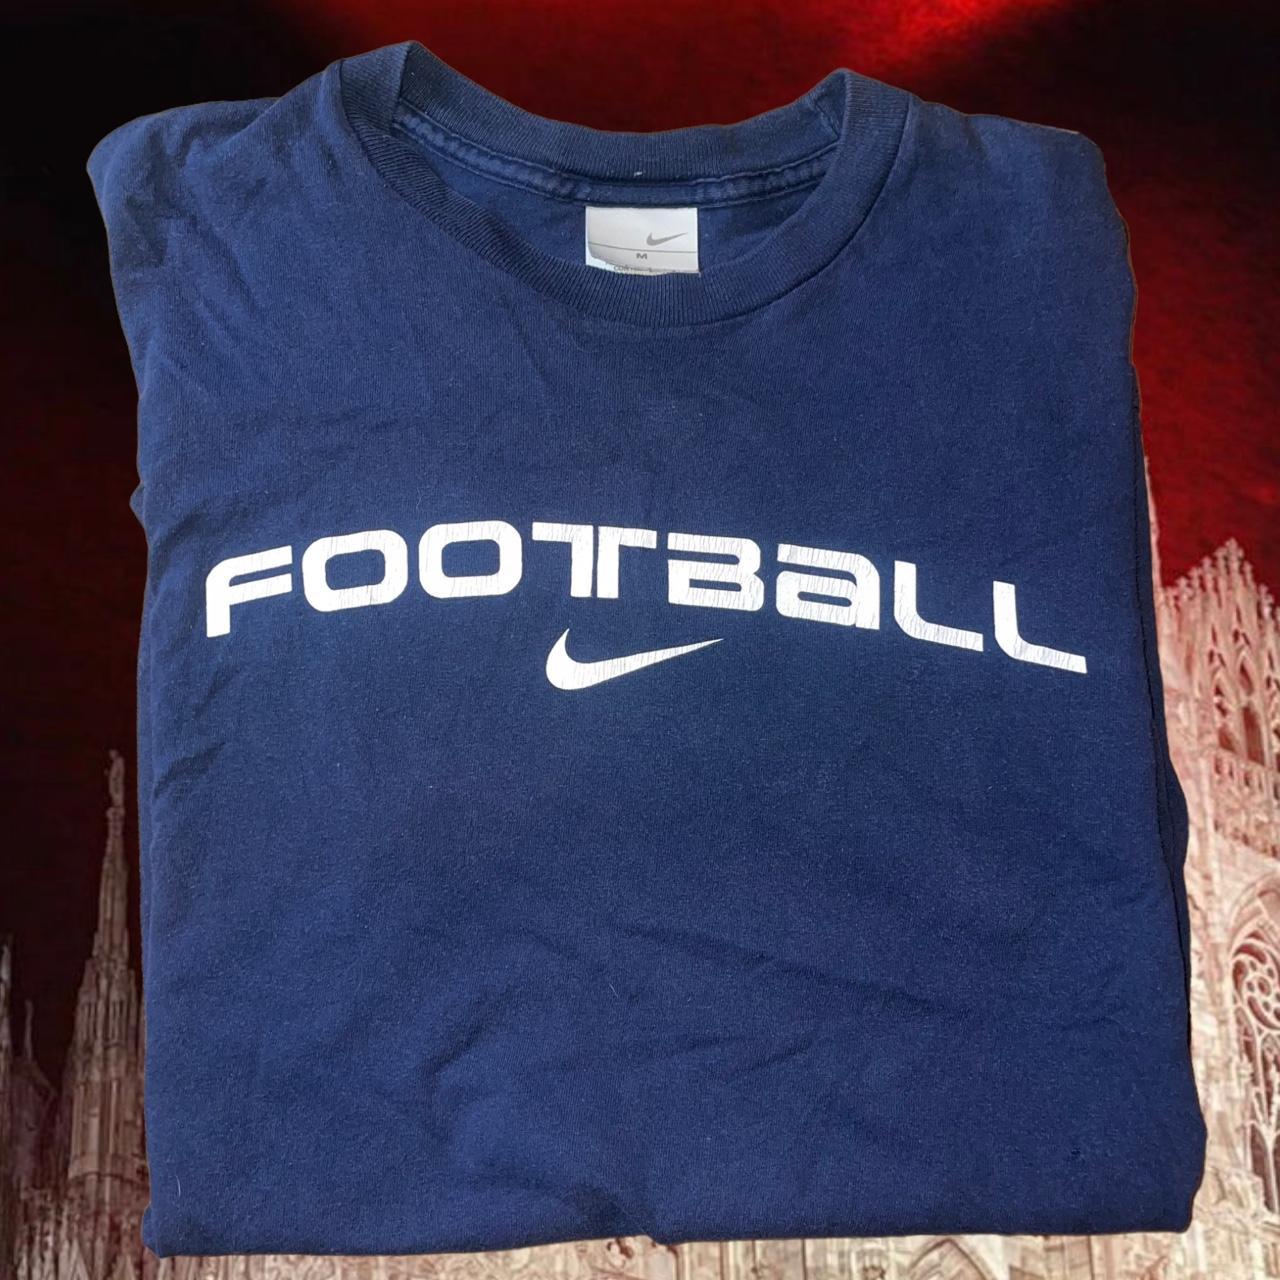 Vintage Nike Football Shirt Hella nice nice grail... - Depop